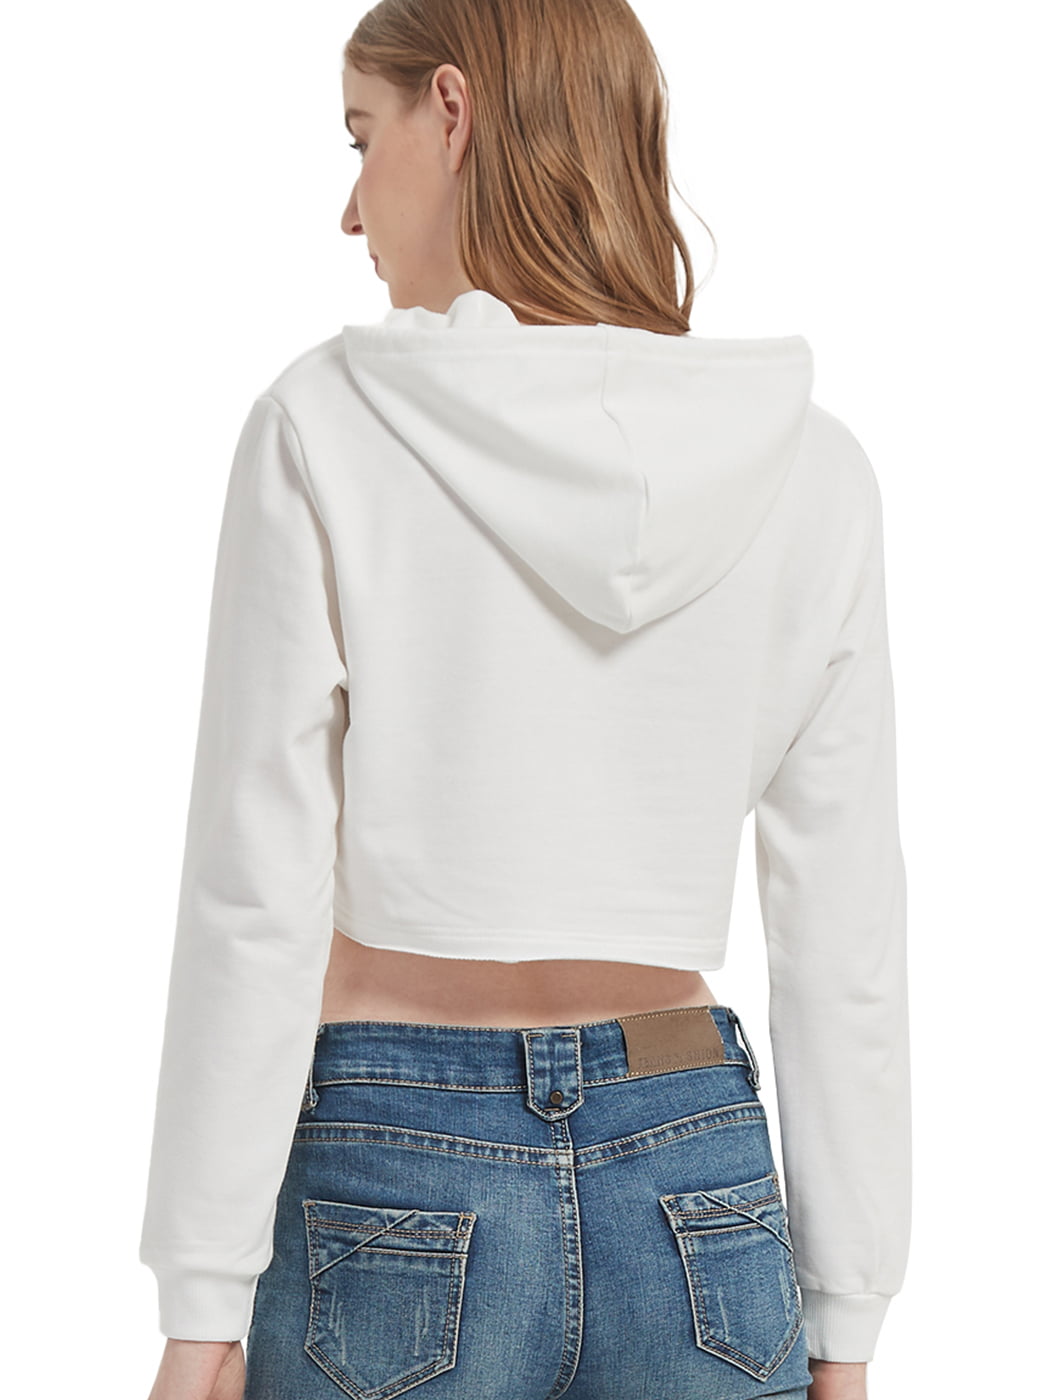 HUMMHUANJ Womens Sweatshirts Hoodies Crewneck Oversized,crop top